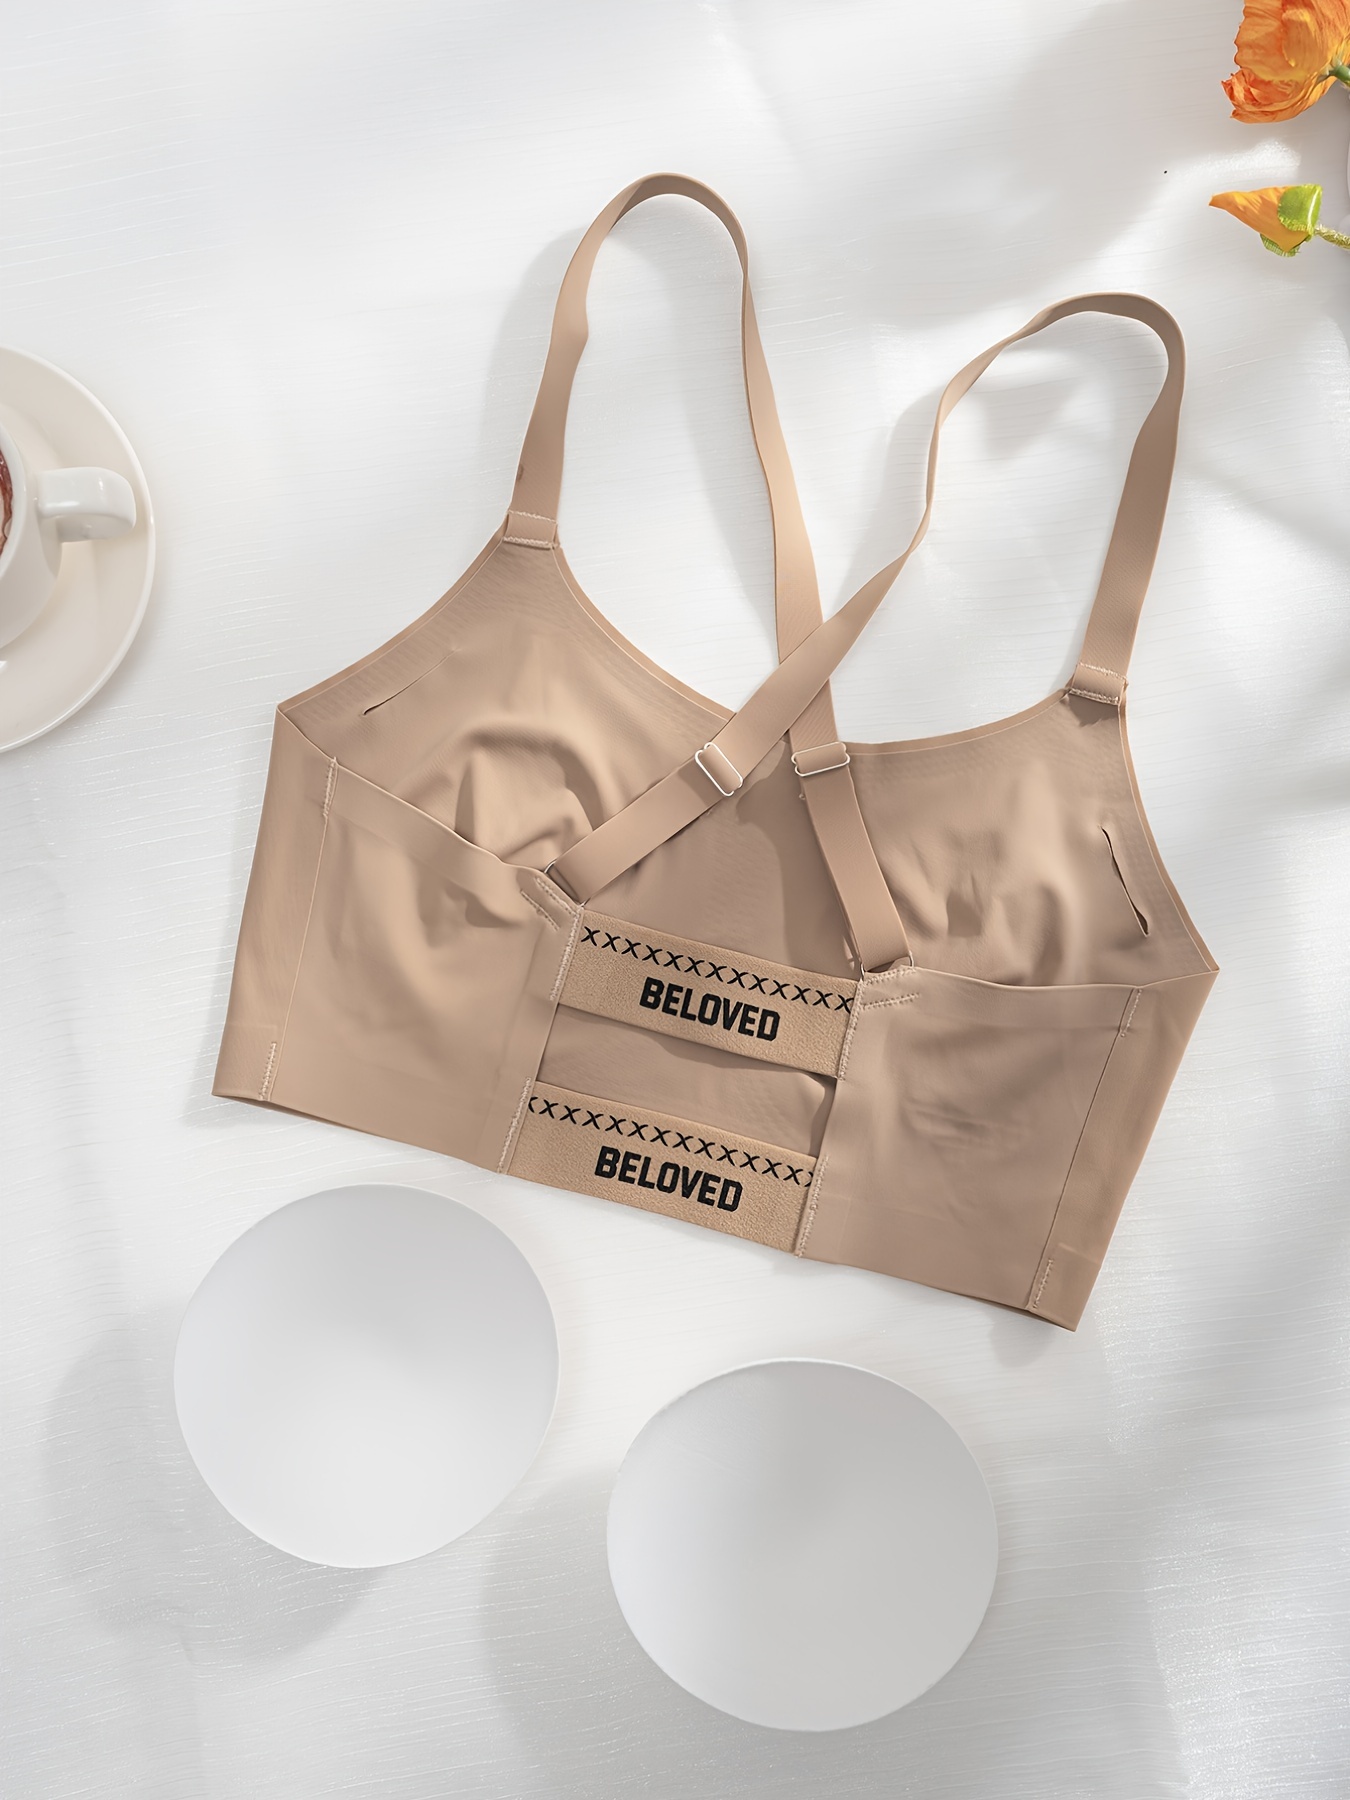 Danskin Lounge Bras, Bralettes & Underwear for Women